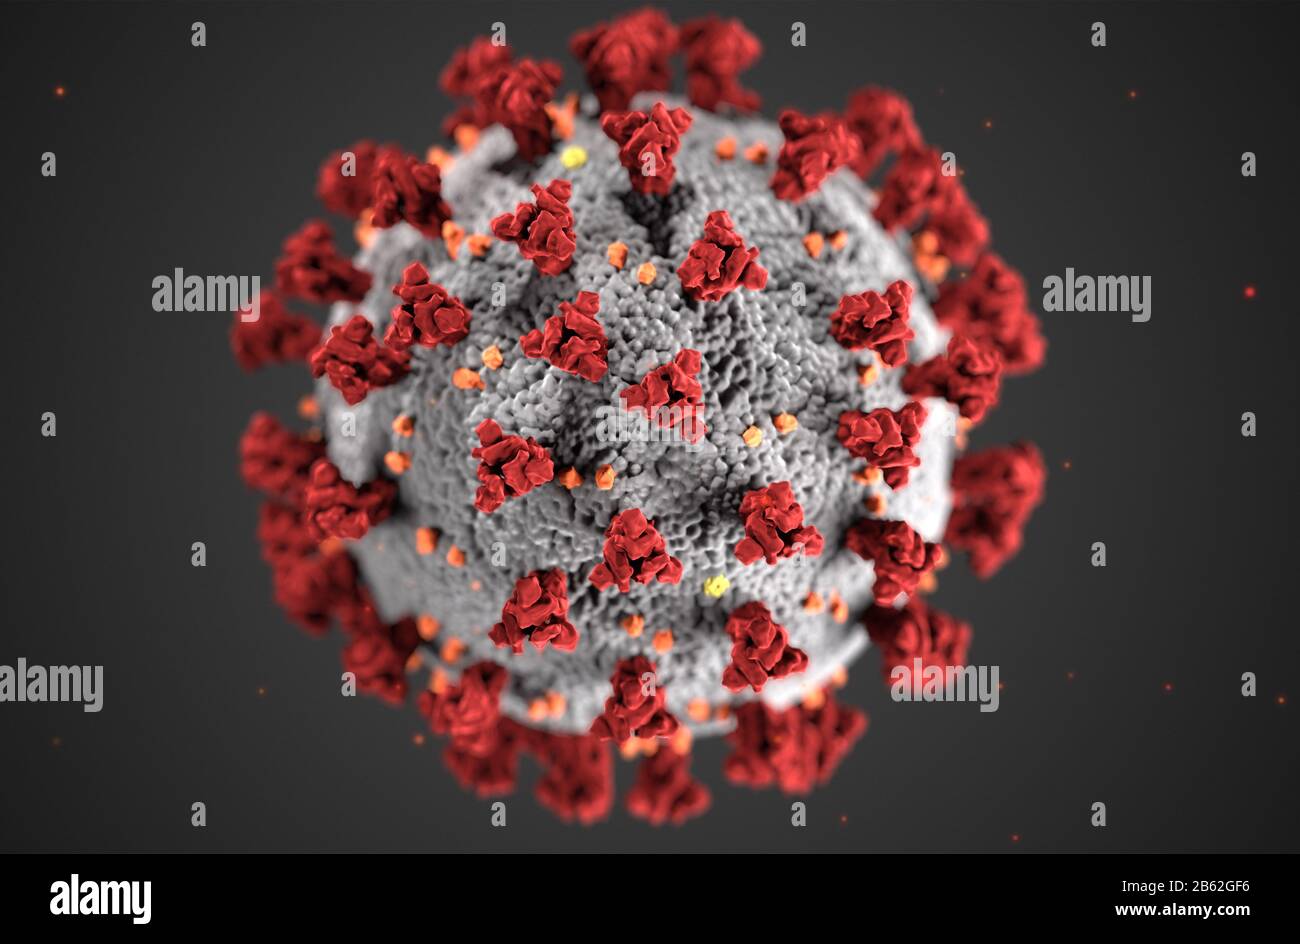 Questa illustrazione, creata presso i Centri per il controllo e la prevenzione Delle Malattie (CDC), rivela la morfologia ultrastrutturale esposta dai coronavirus. Un nuovo coronavirus, chiamato Sindrome respiratoria acuta Grave coronavirus 2 (SARS-COV-2), è stato identificato come la causa di un focolaio di malattia respiratoria rilevato per la prima volta a Wuhan, Cina nel 2019. La malattia causata da questo virus è stata chiamata coronavirus Disease 2019 (COVID-19). Foto dei Centri per il controllo E la prevenzione Delle Malattie/UPI Foto Stock